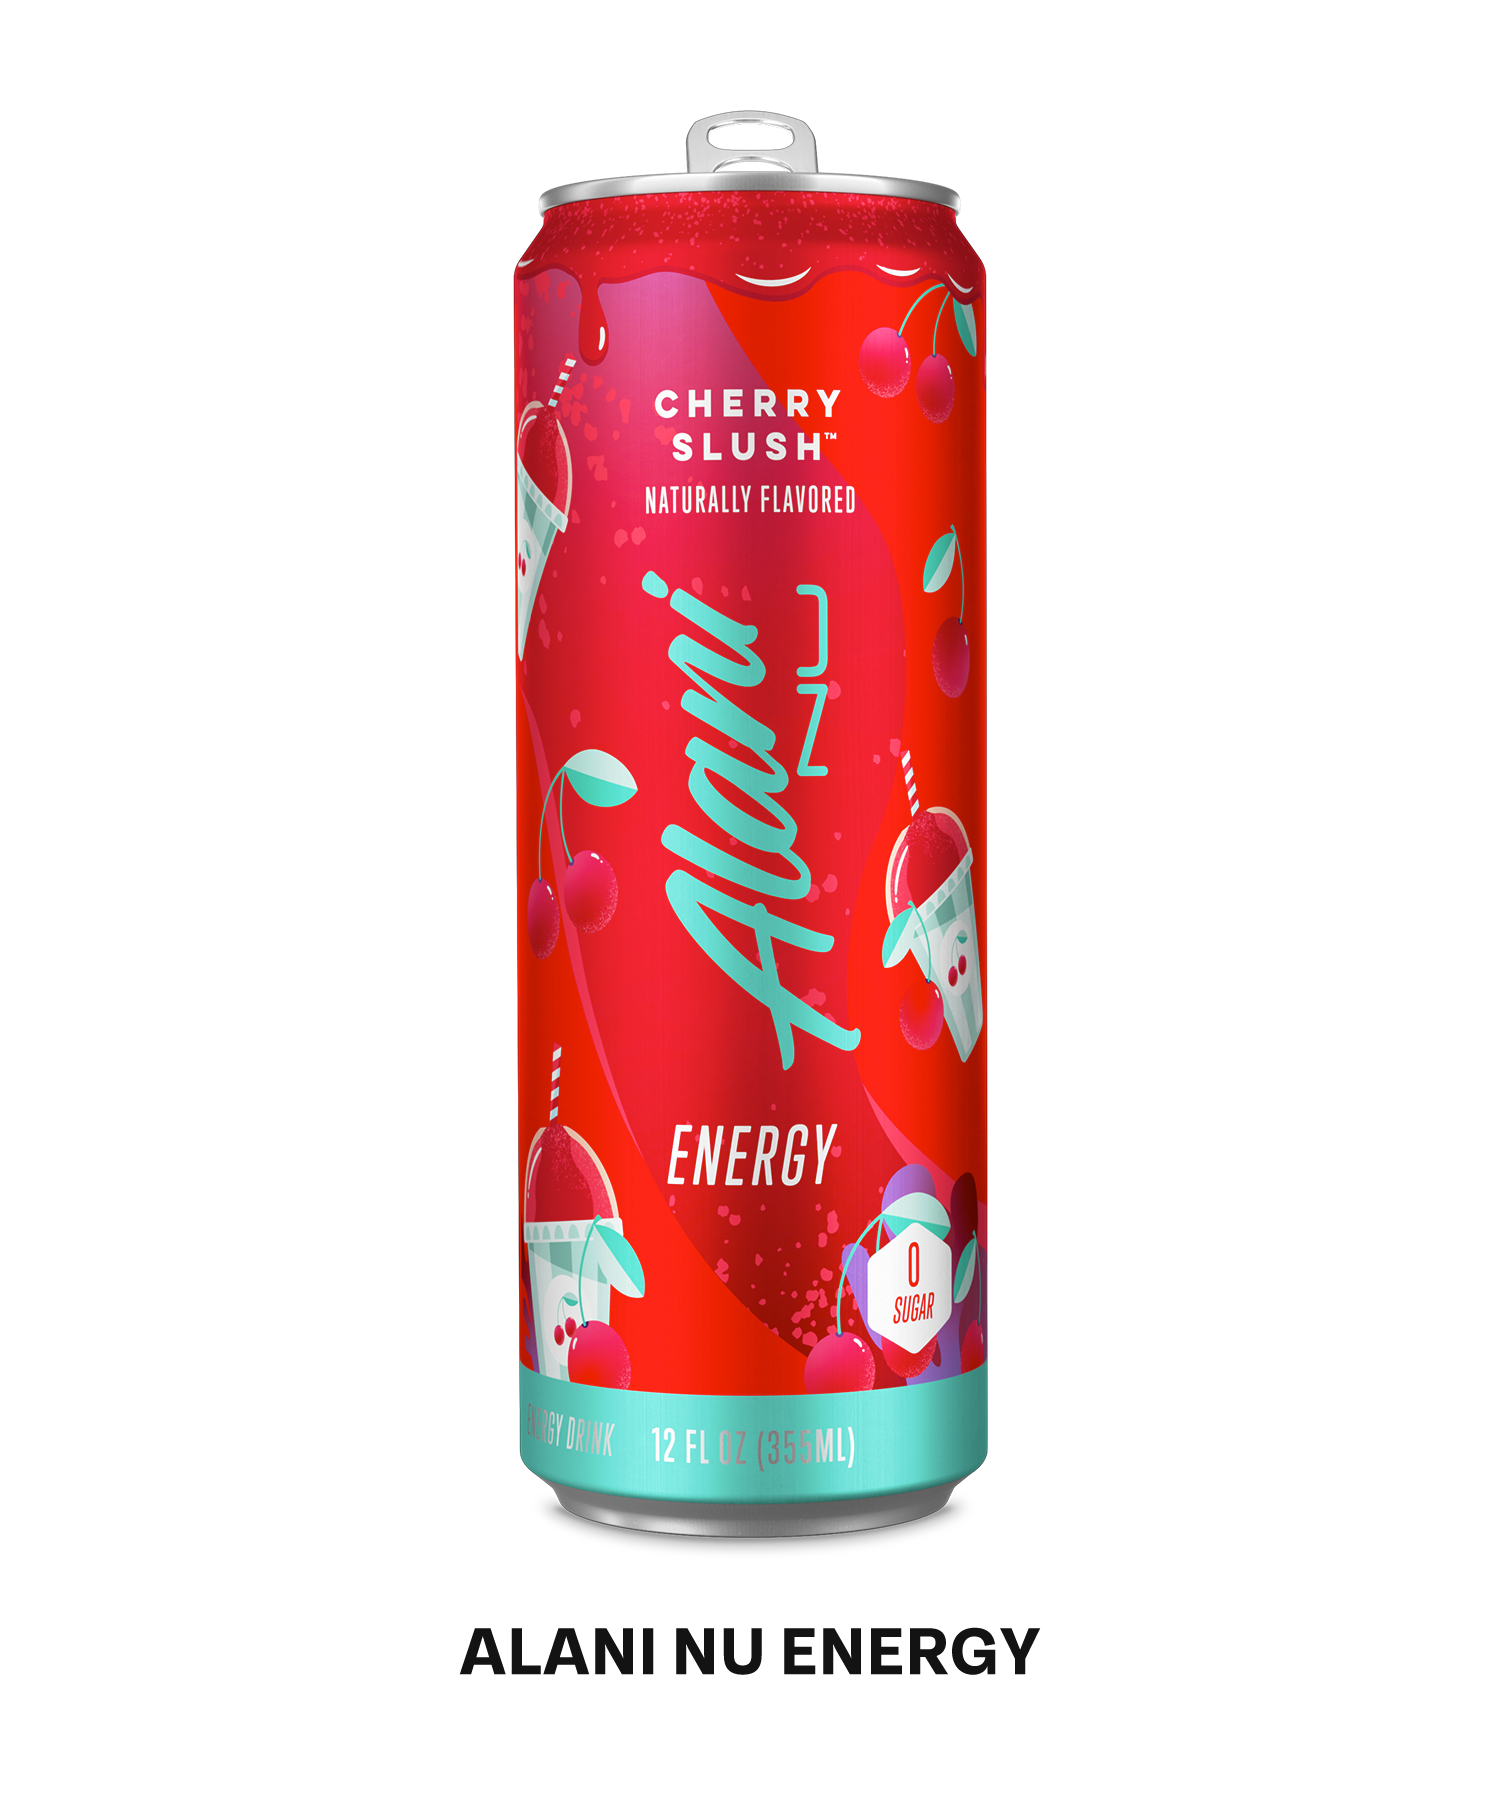 A 12oz Alani energy drink in flavor cherry slush.